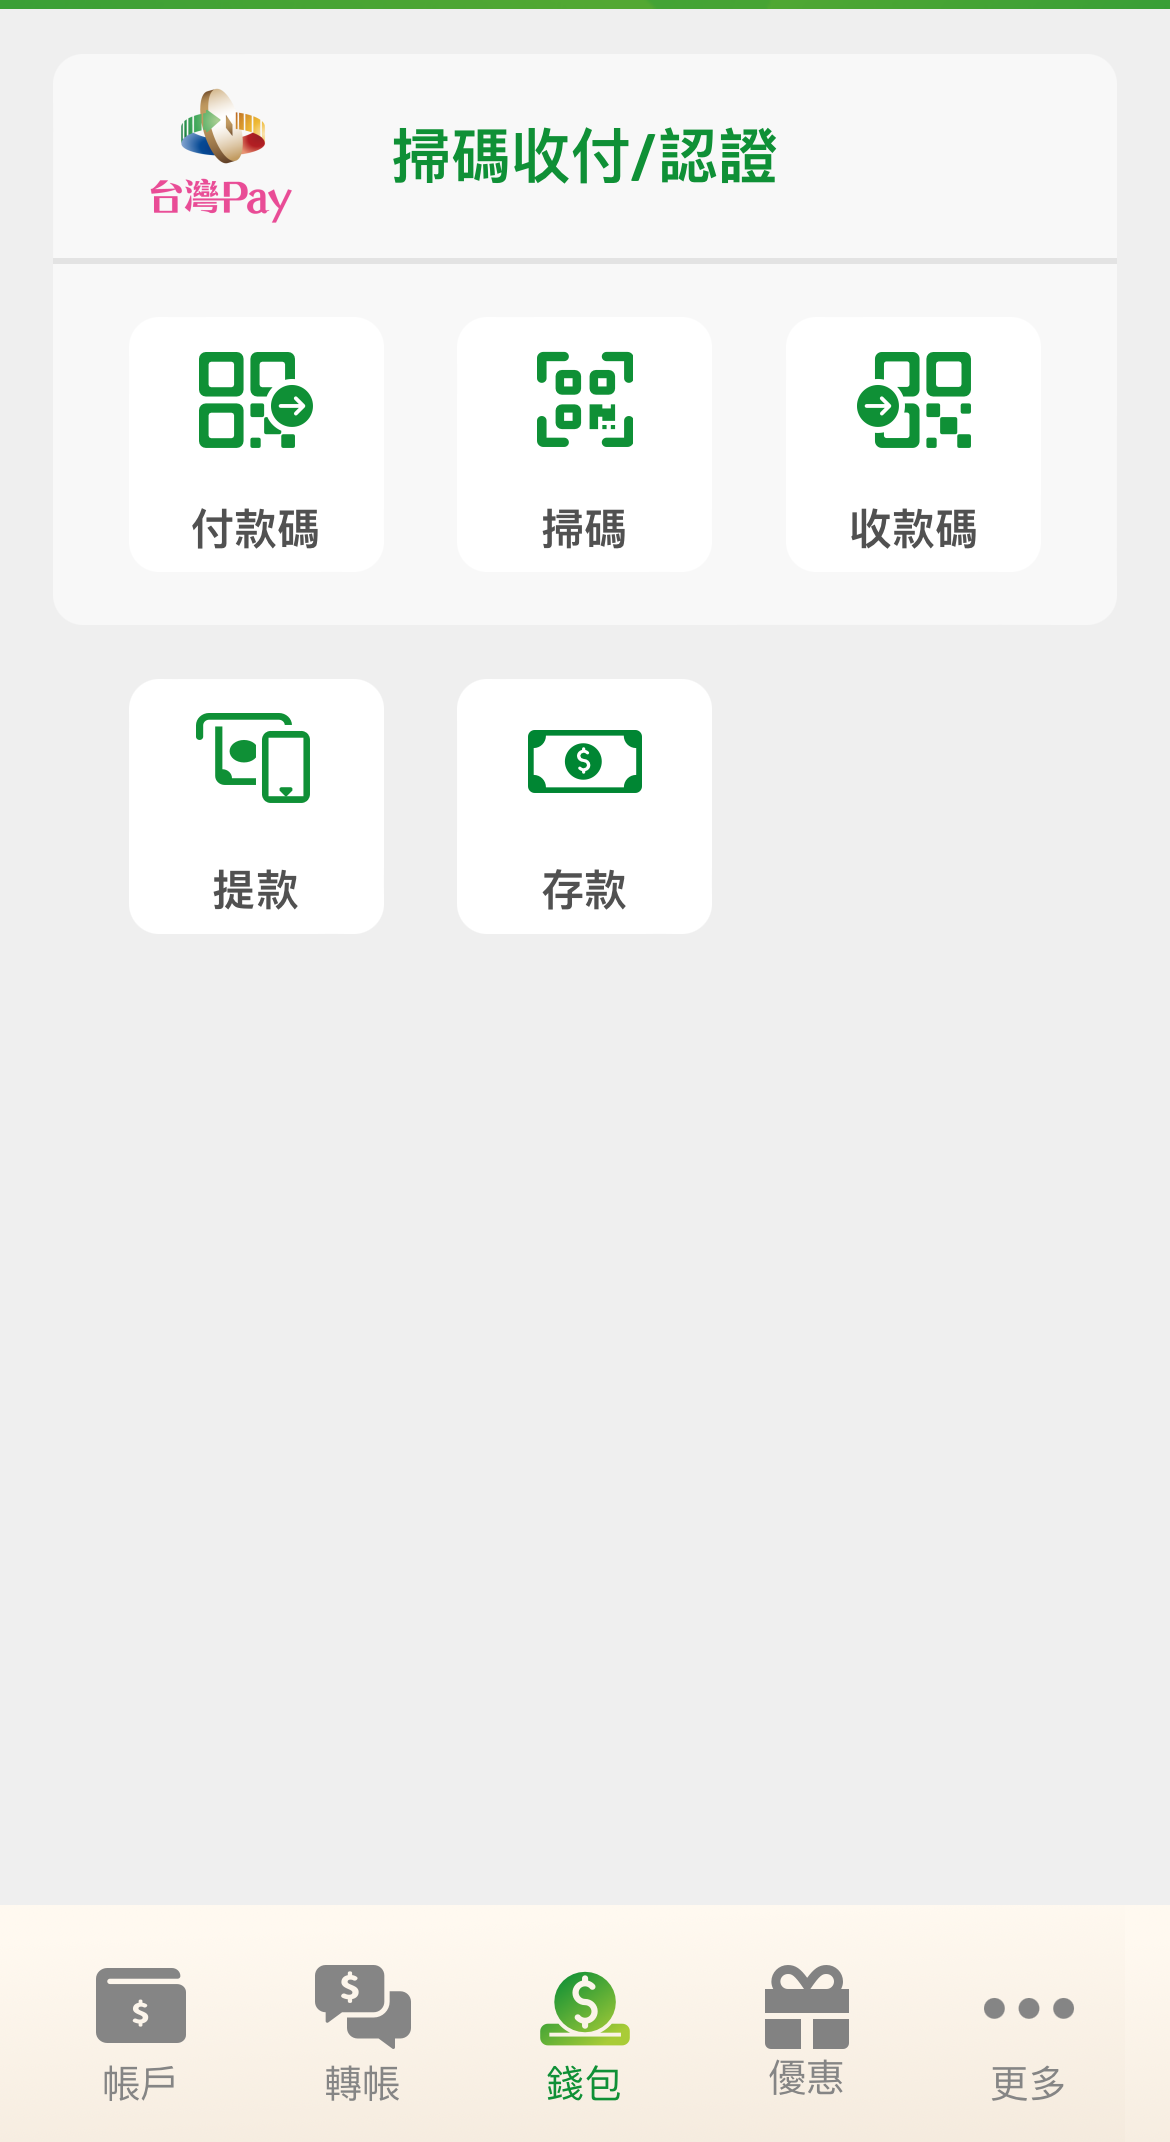 中華郵政行動郵局APP新增「錢包」功能 整合收付款、無卡存提款服務 - 電腦王阿達